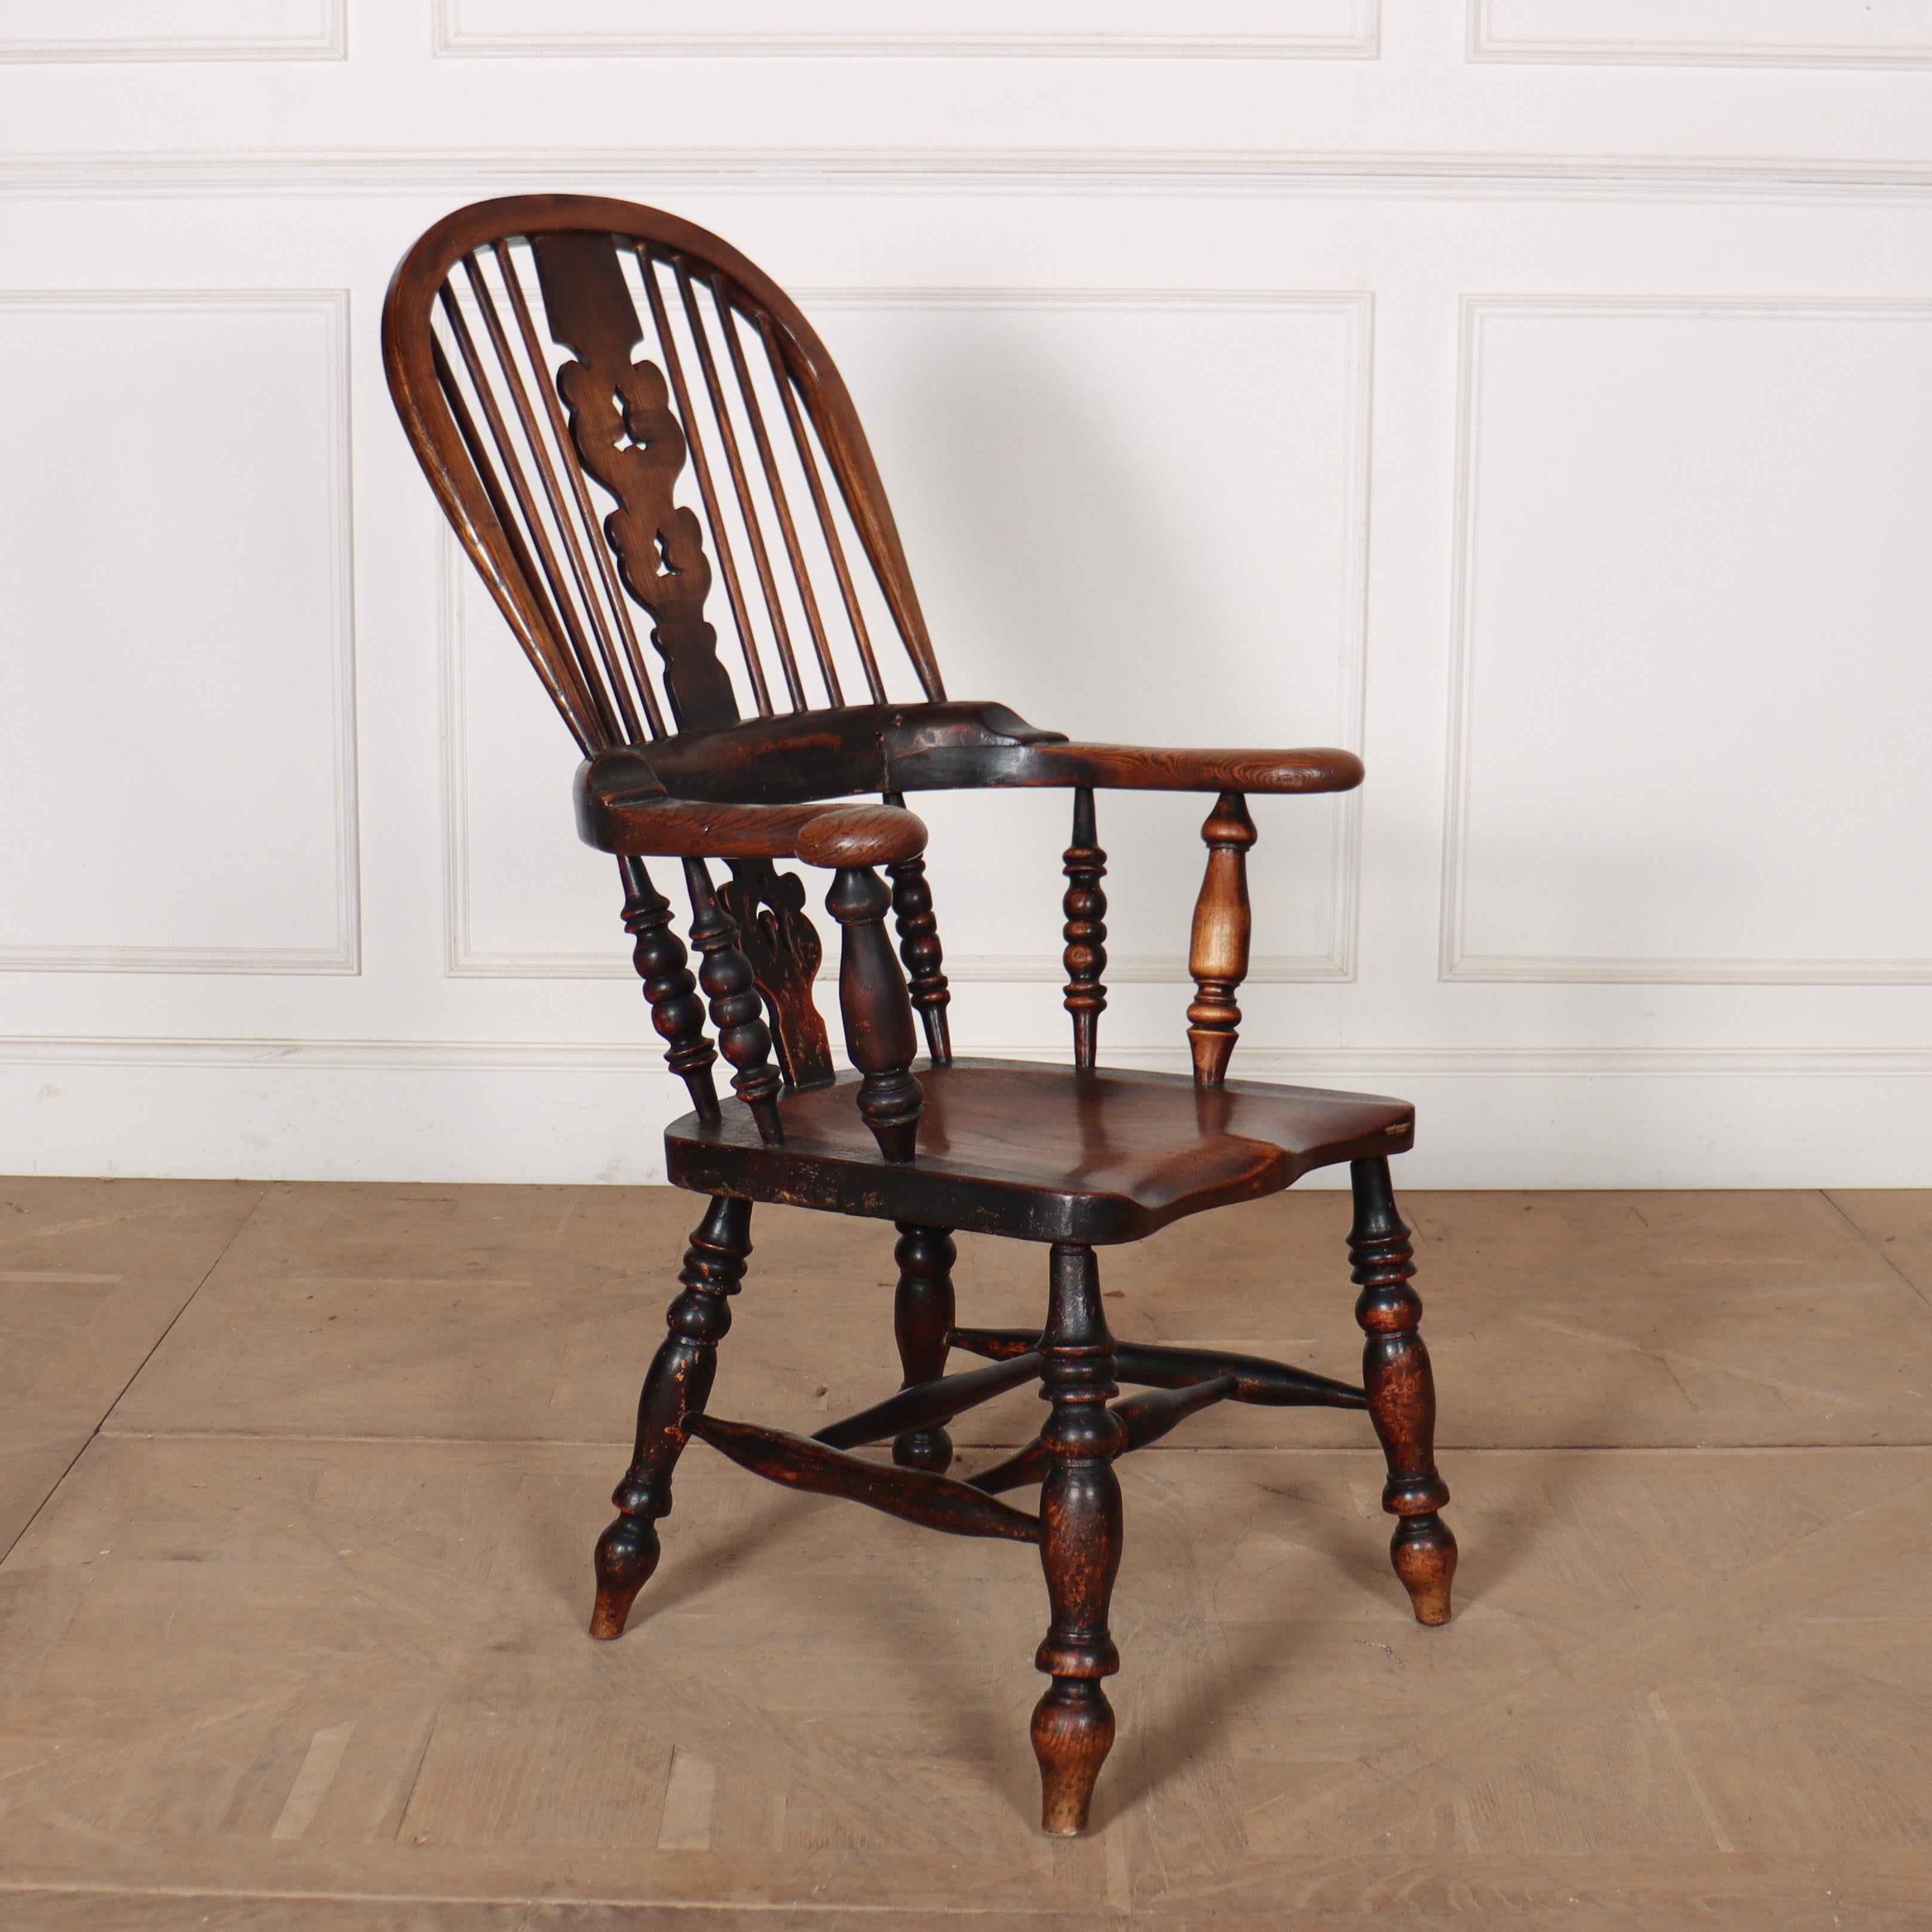 Windsor-Stuhl aus Buche und Ulme, 19. Jahrhundert, Yorkshire. Sehr gute Farbe. 1850.

Sitztiefe ist 17 Zoll, Sitzhöhe ist 17 Zoll.

Referenz: 8127

Abmessungen
26,5 Zoll (67 cm) breit
29 Zoll (74 cm) tief
44,5 Zoll (113 cm) hoch